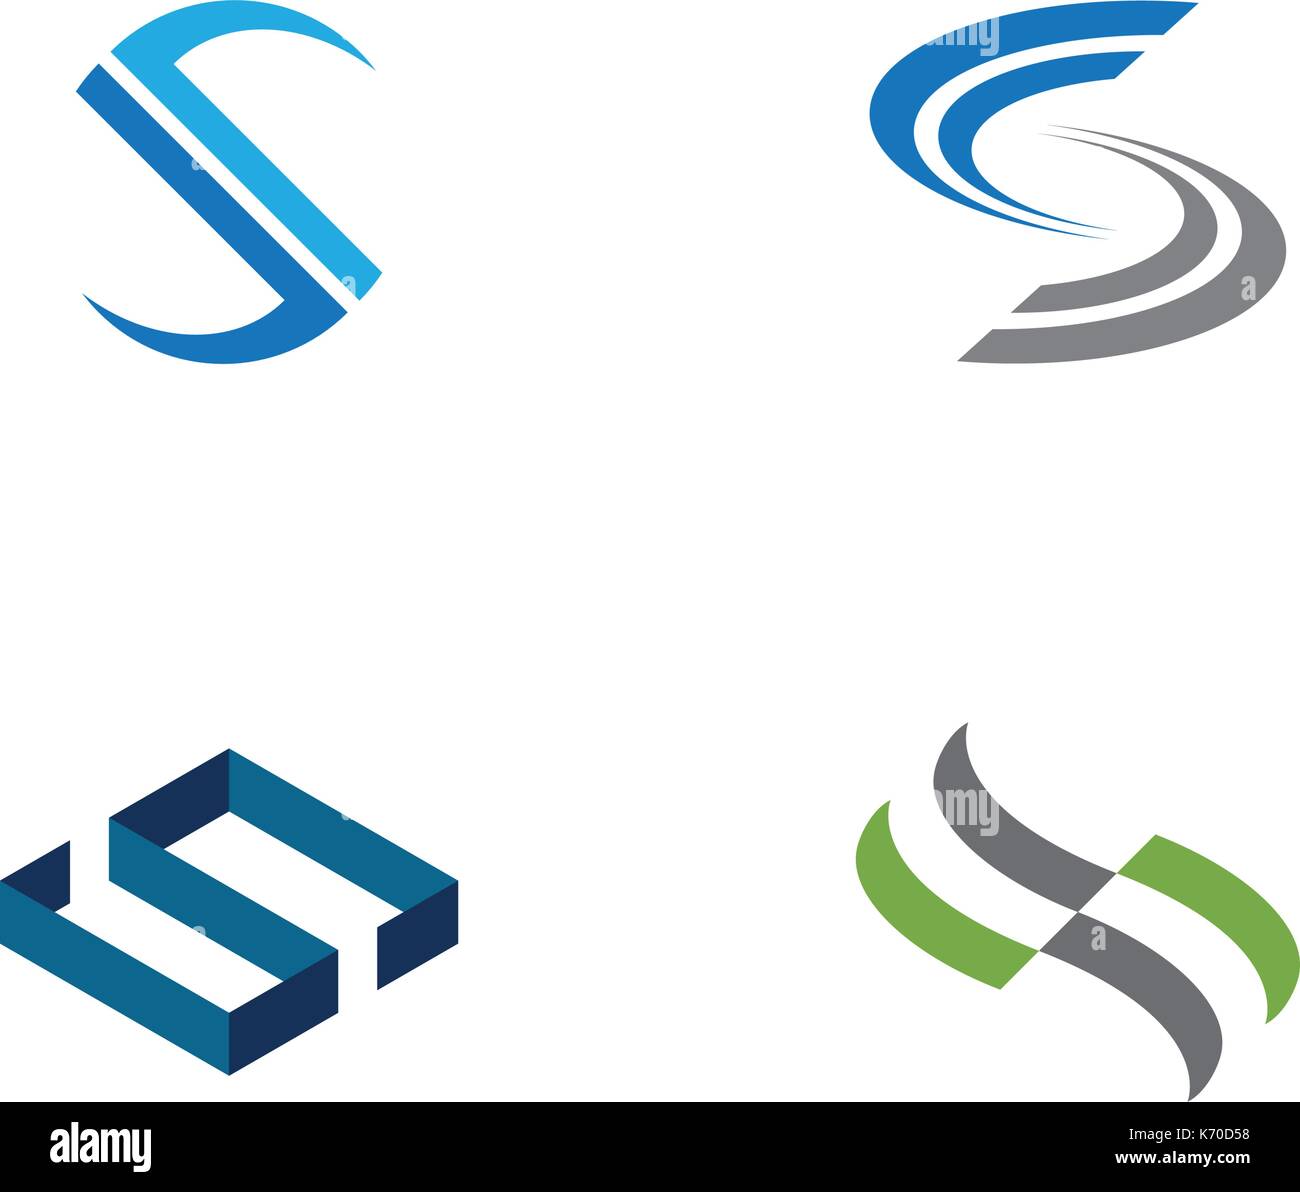 Business corporate lettera S logo design vector Illustrazione Vettoriale